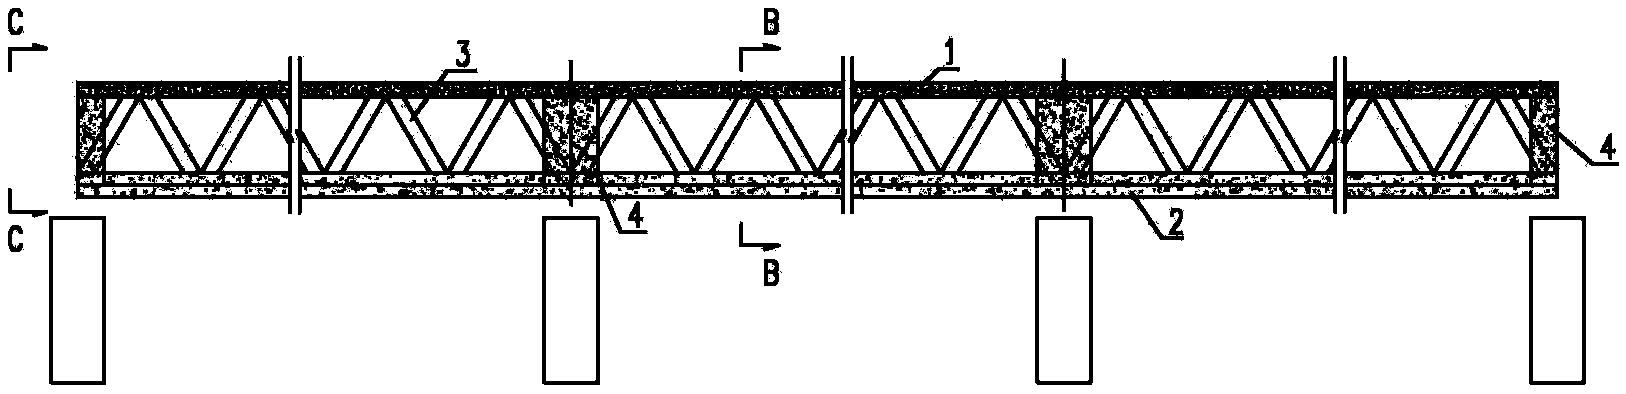 Deck-type triangular truss steel joist bond beam